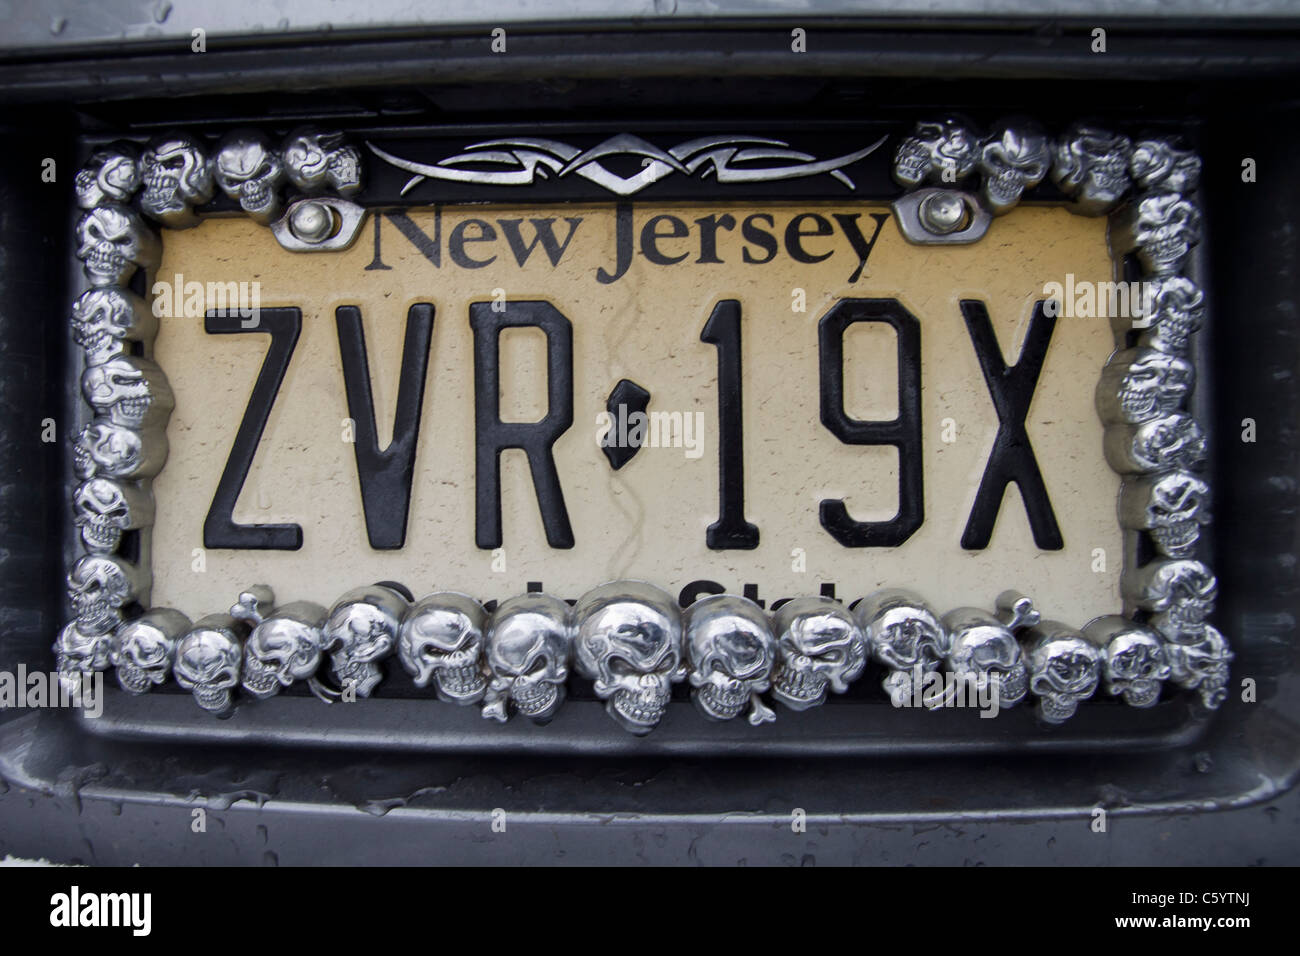 Ein New Jersey Nummernschild mit Totenkopf Dekoration Stockfotografie -  Alamy